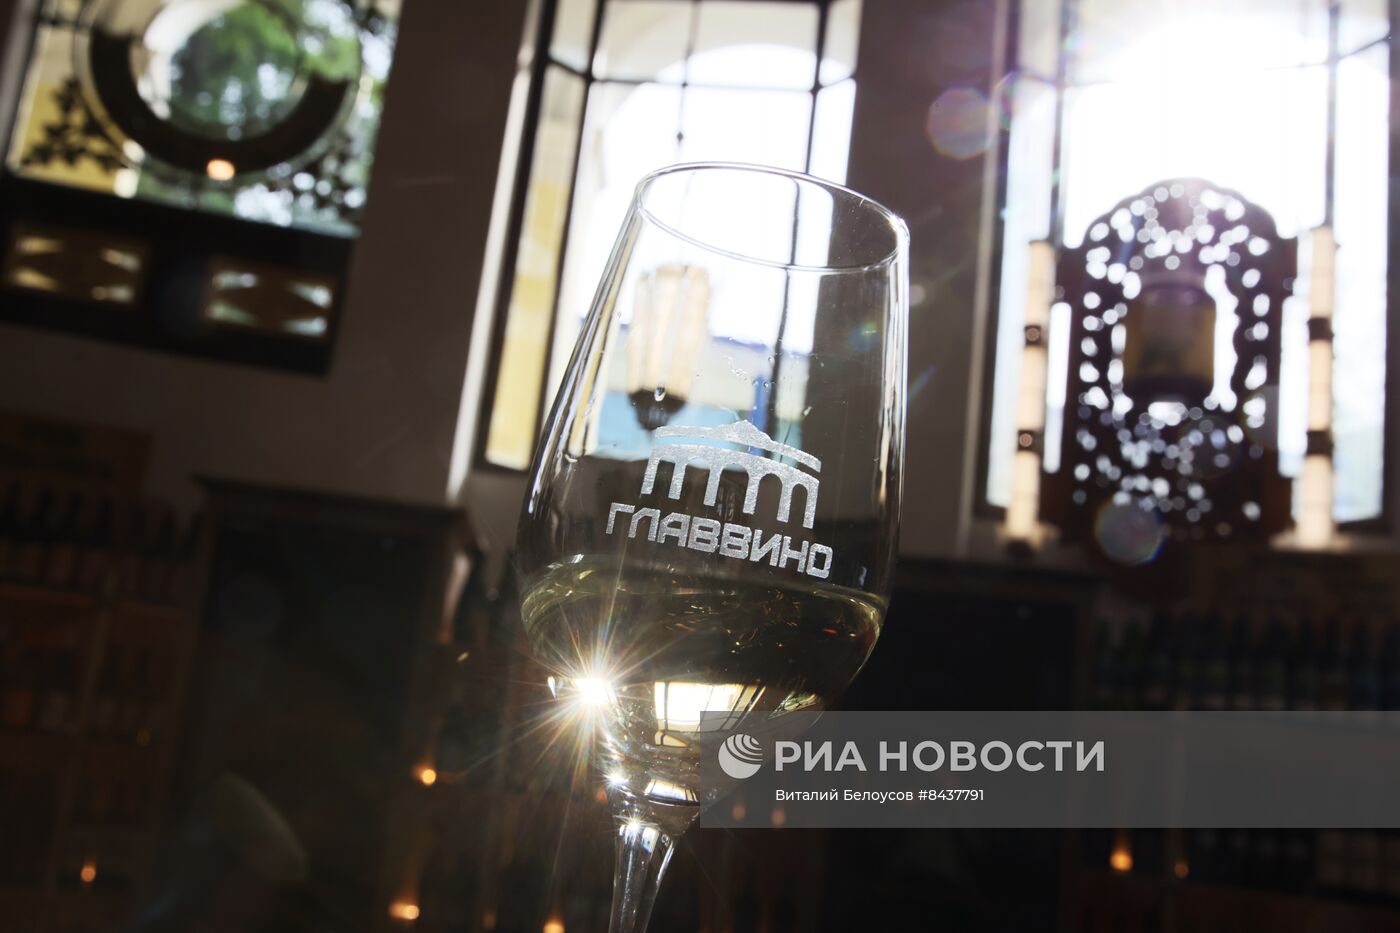 Открытие дегустационного центра российского виноделия "Главвино"